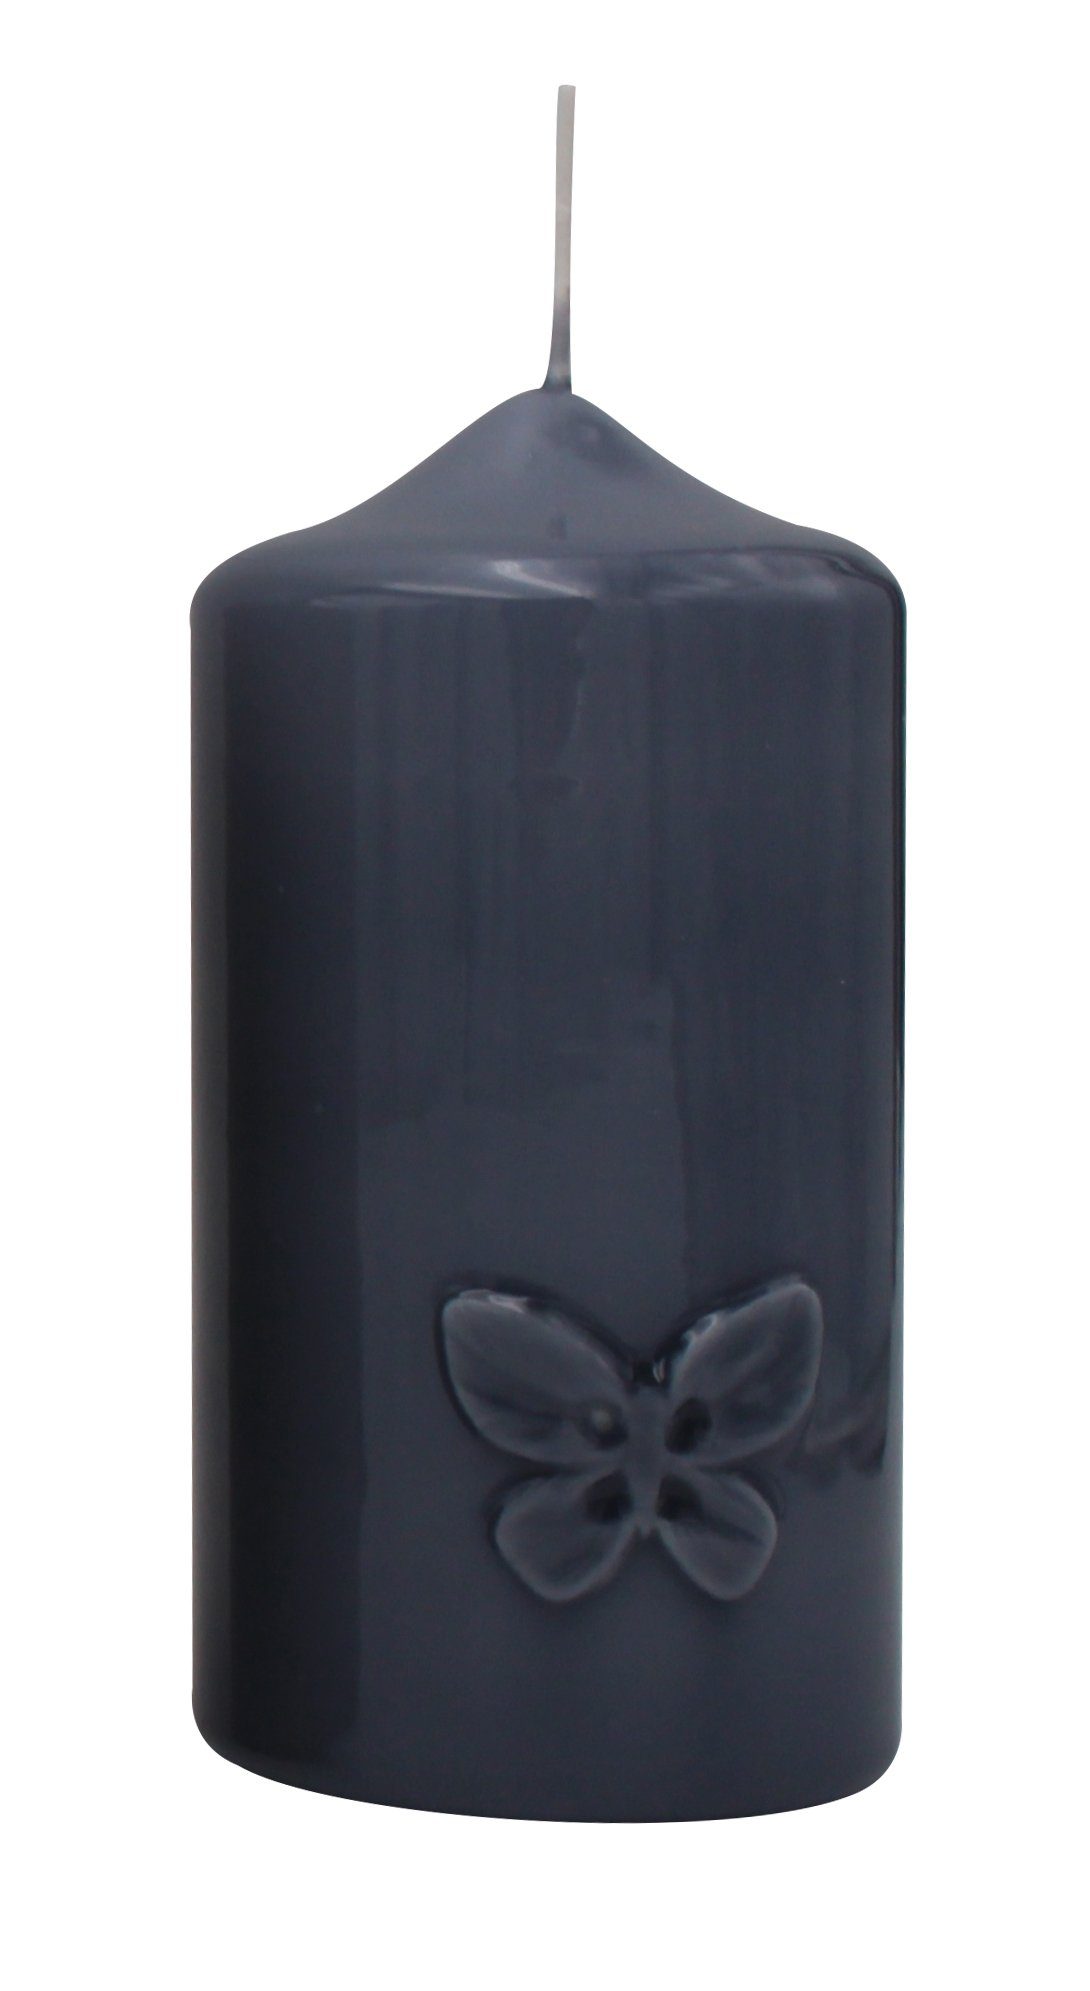 Kopschitz Kerzen Stumpenkerze Kerze "Butterfly" Blau-Grau gelackt 120 x Ø 60 mm, 1 Stück